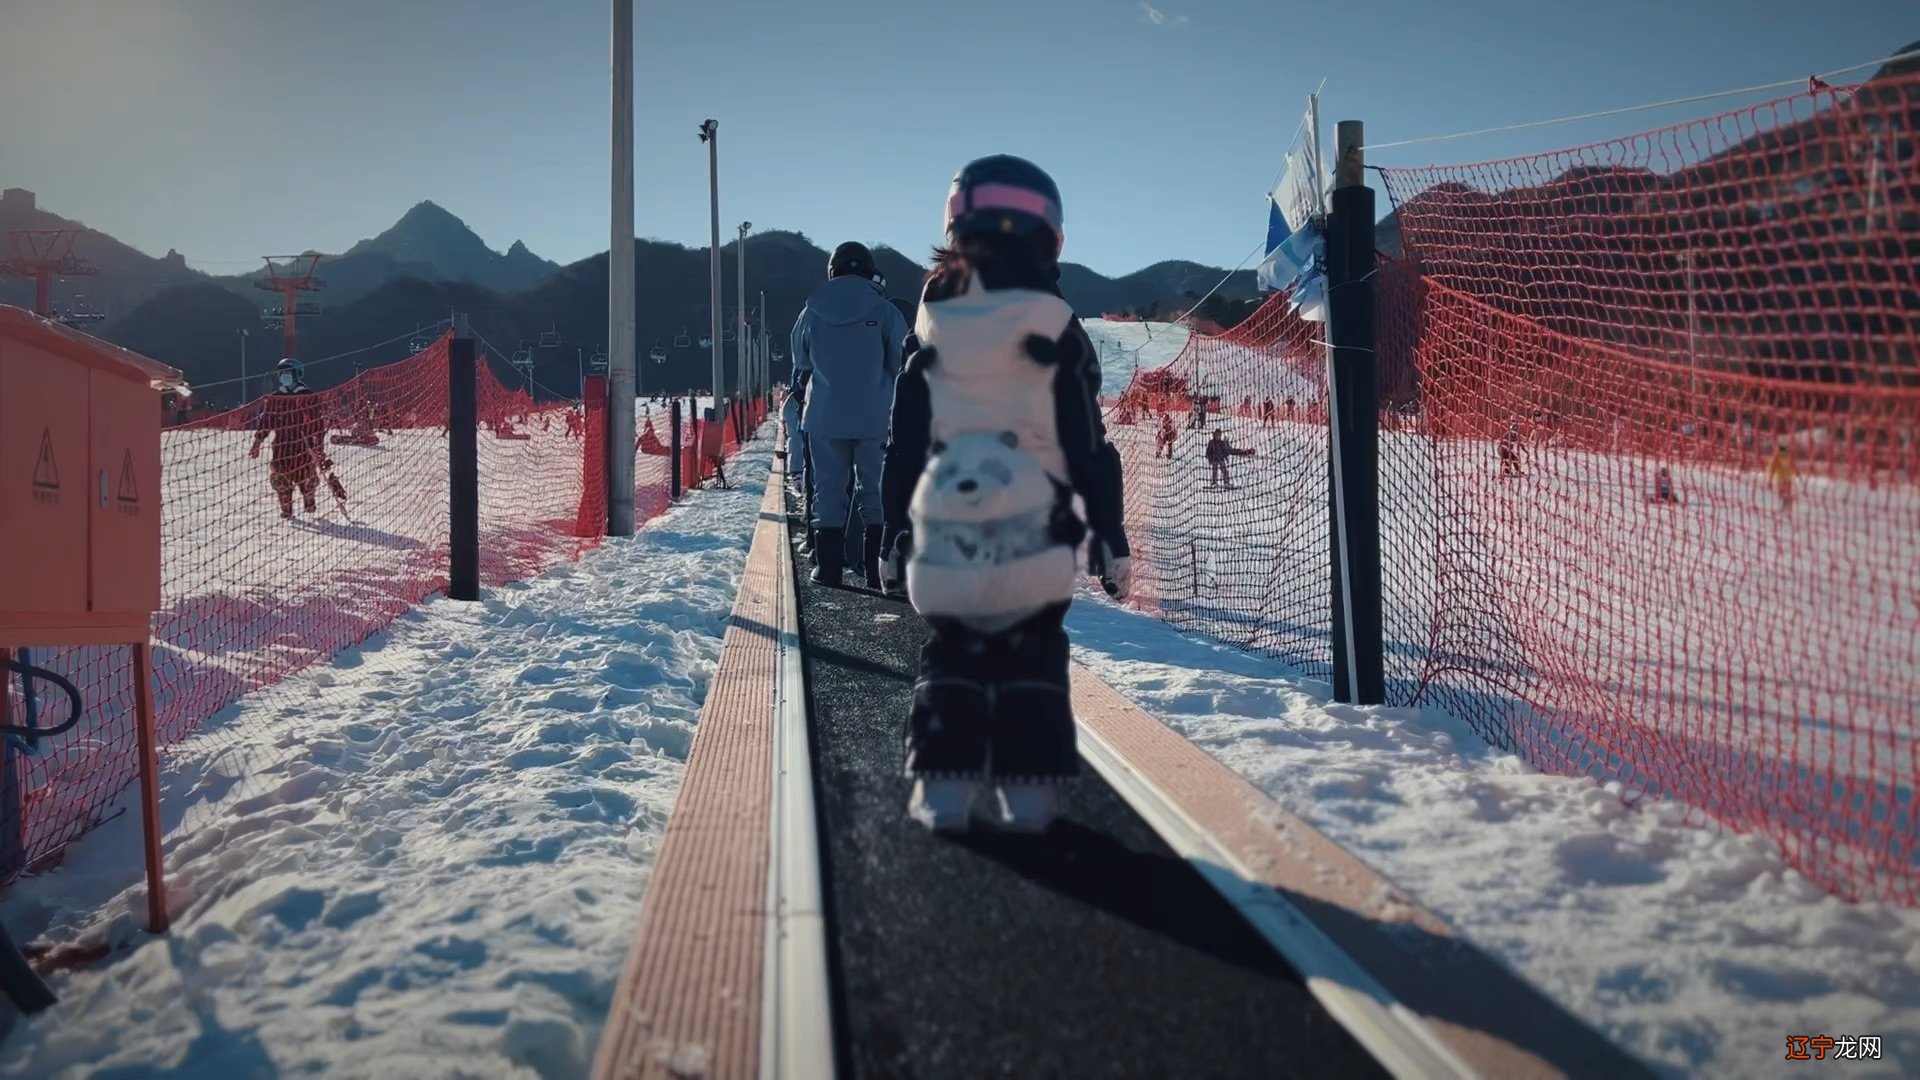 见别人滑雪_滑雪滑雪大冒险_滑雪极限运动滑雪视频